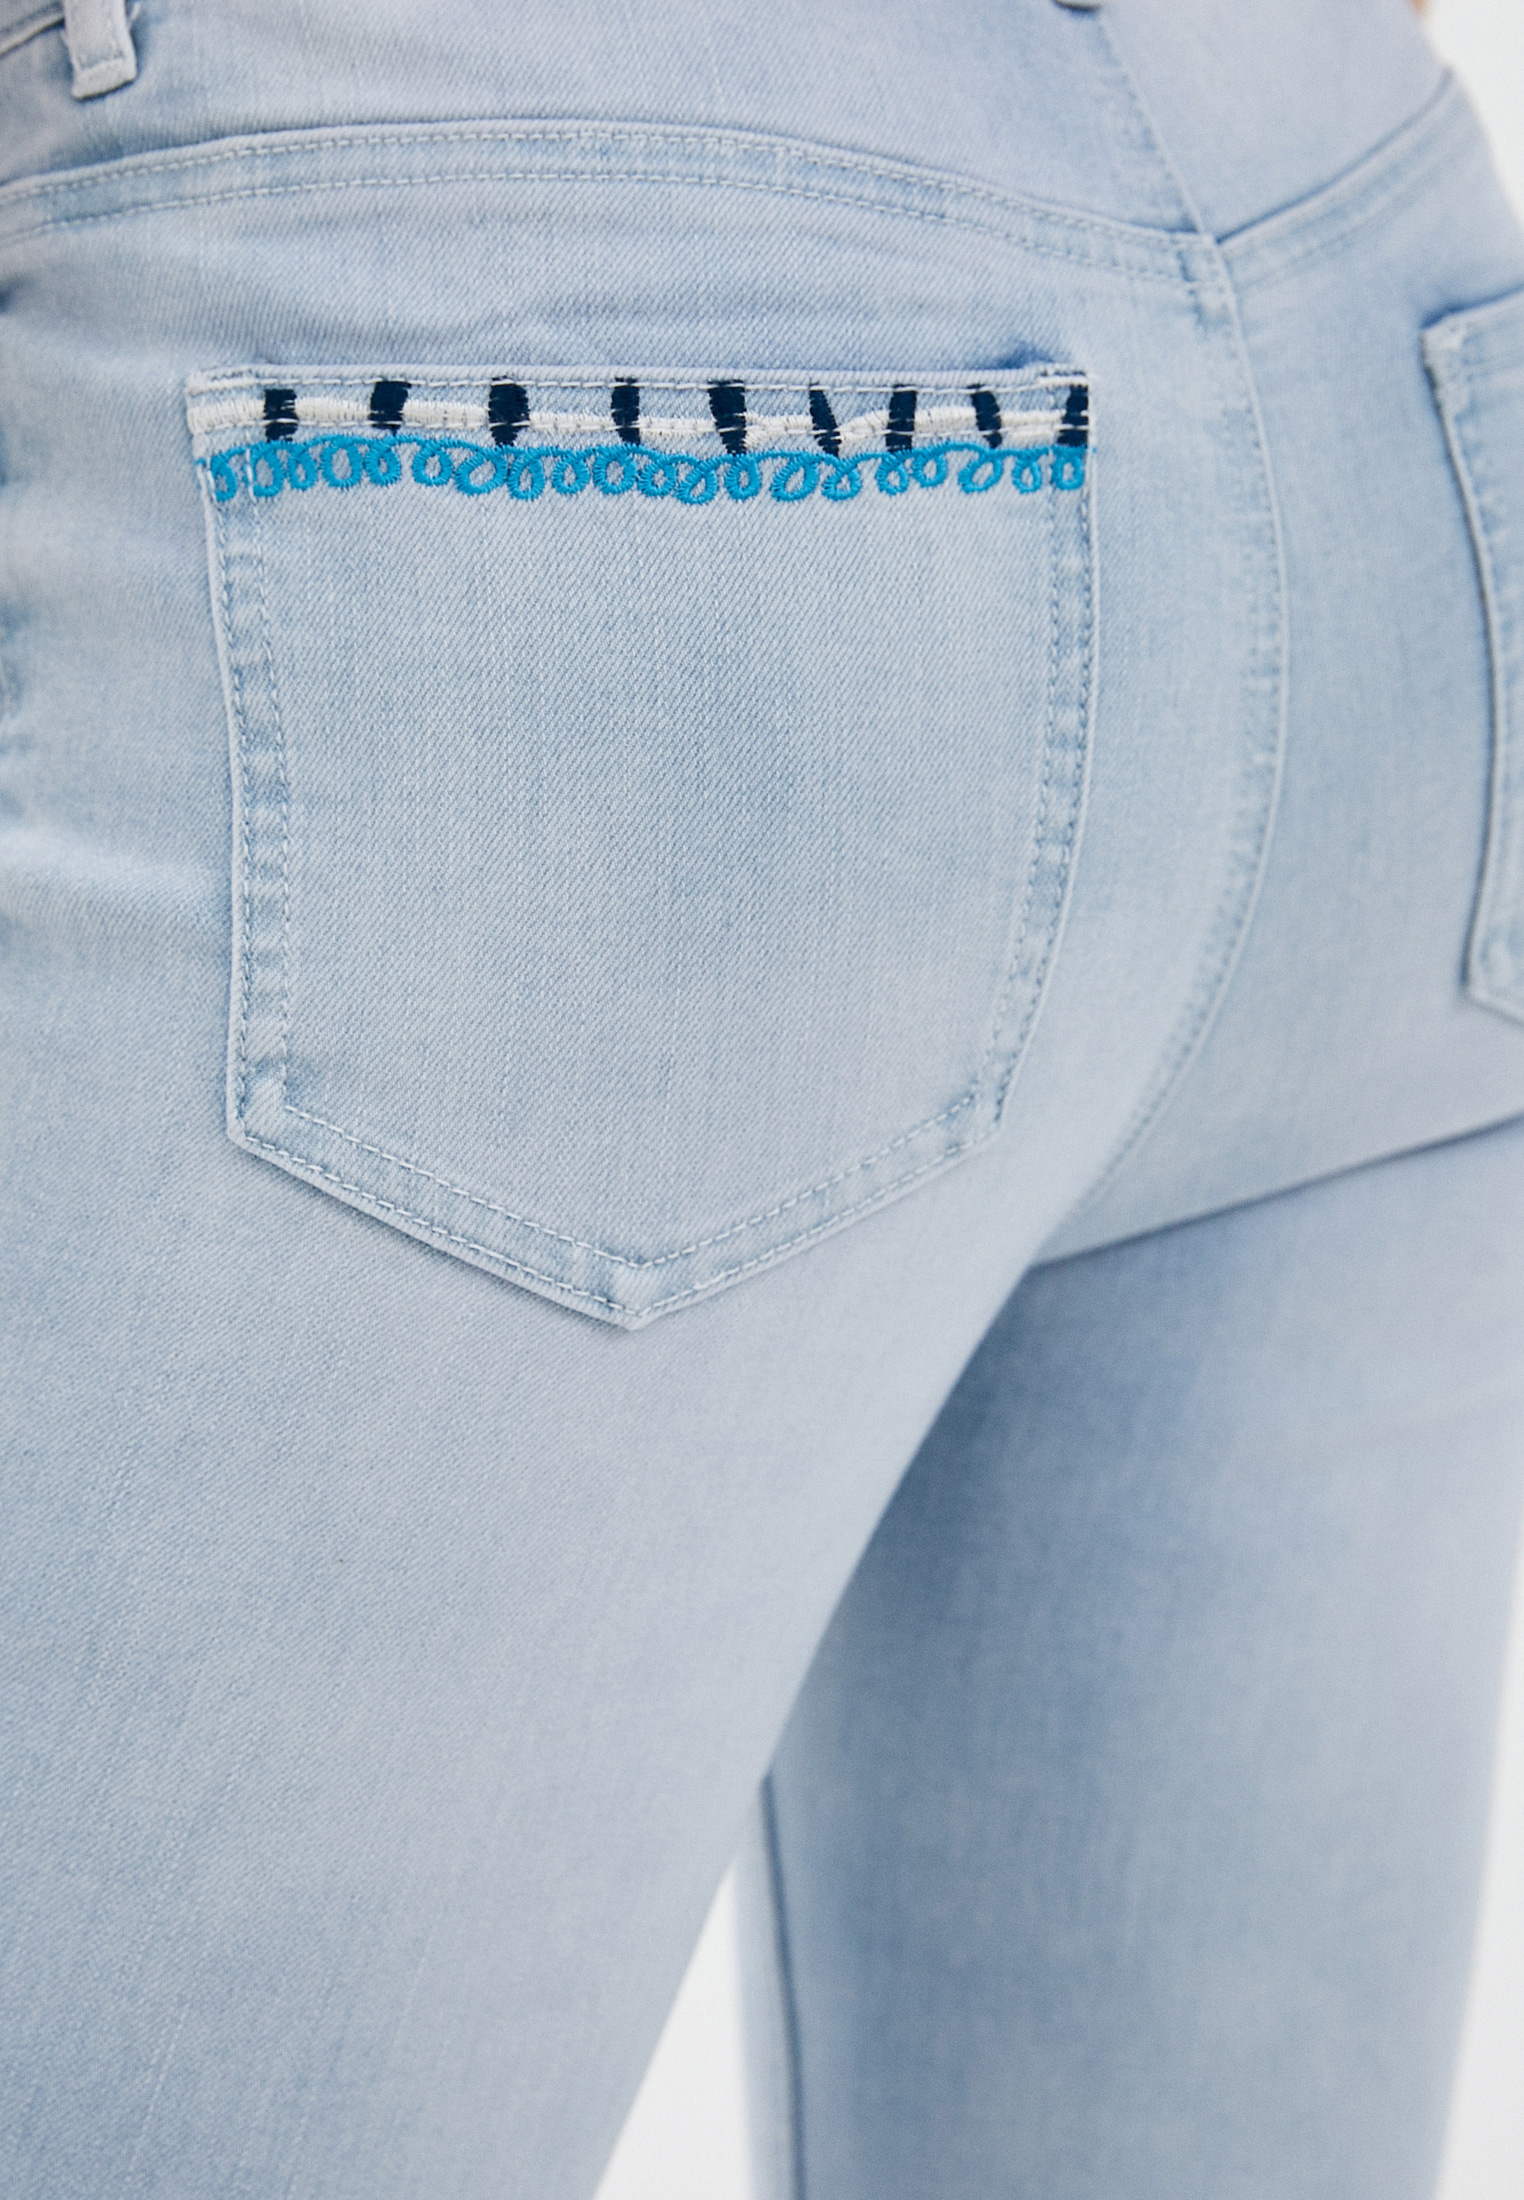 Зауженные джинсы женские Desigual (Дезигуаль) 21SWDD35 купить за 11899 руб.